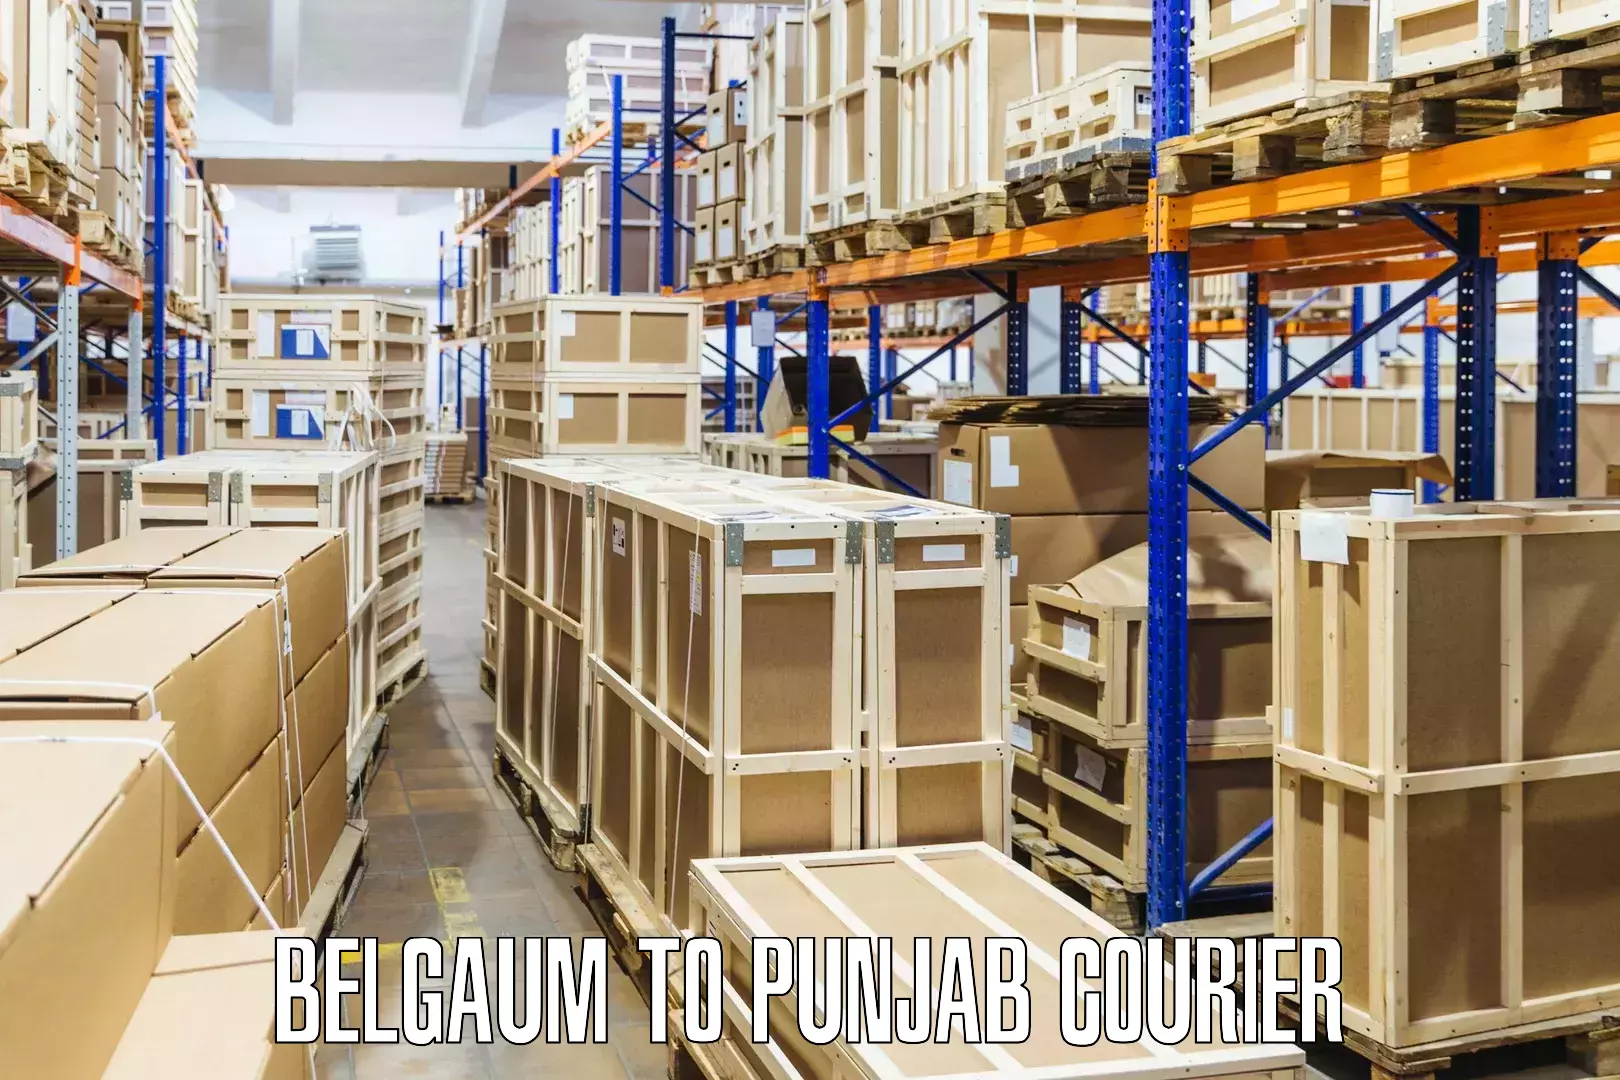 Express courier facilities Belgaum to Dinanagar